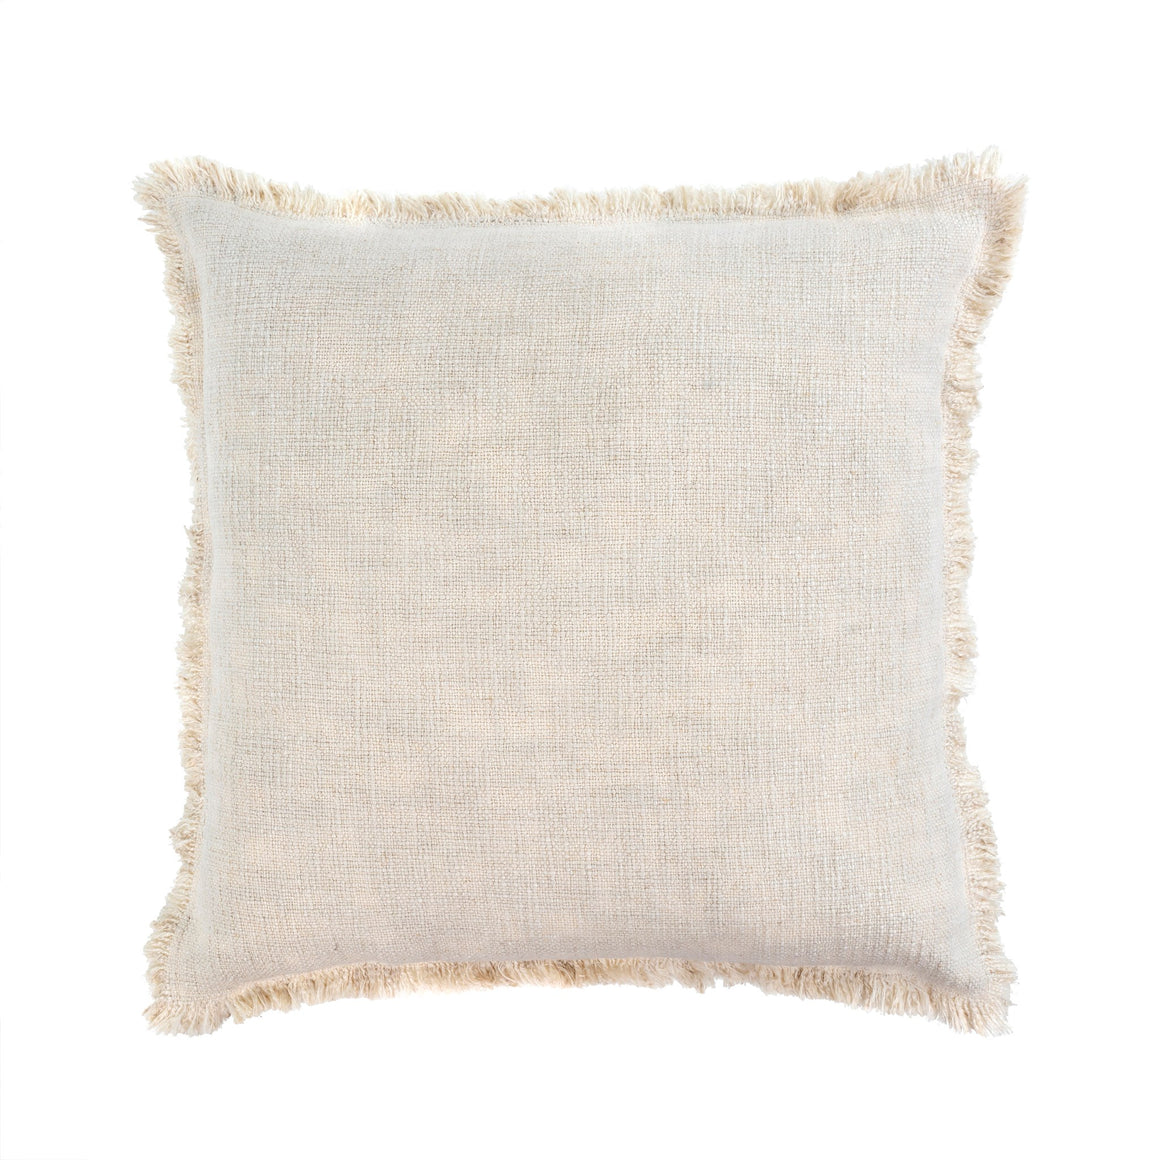 Fringed Ecru Linen Pillow